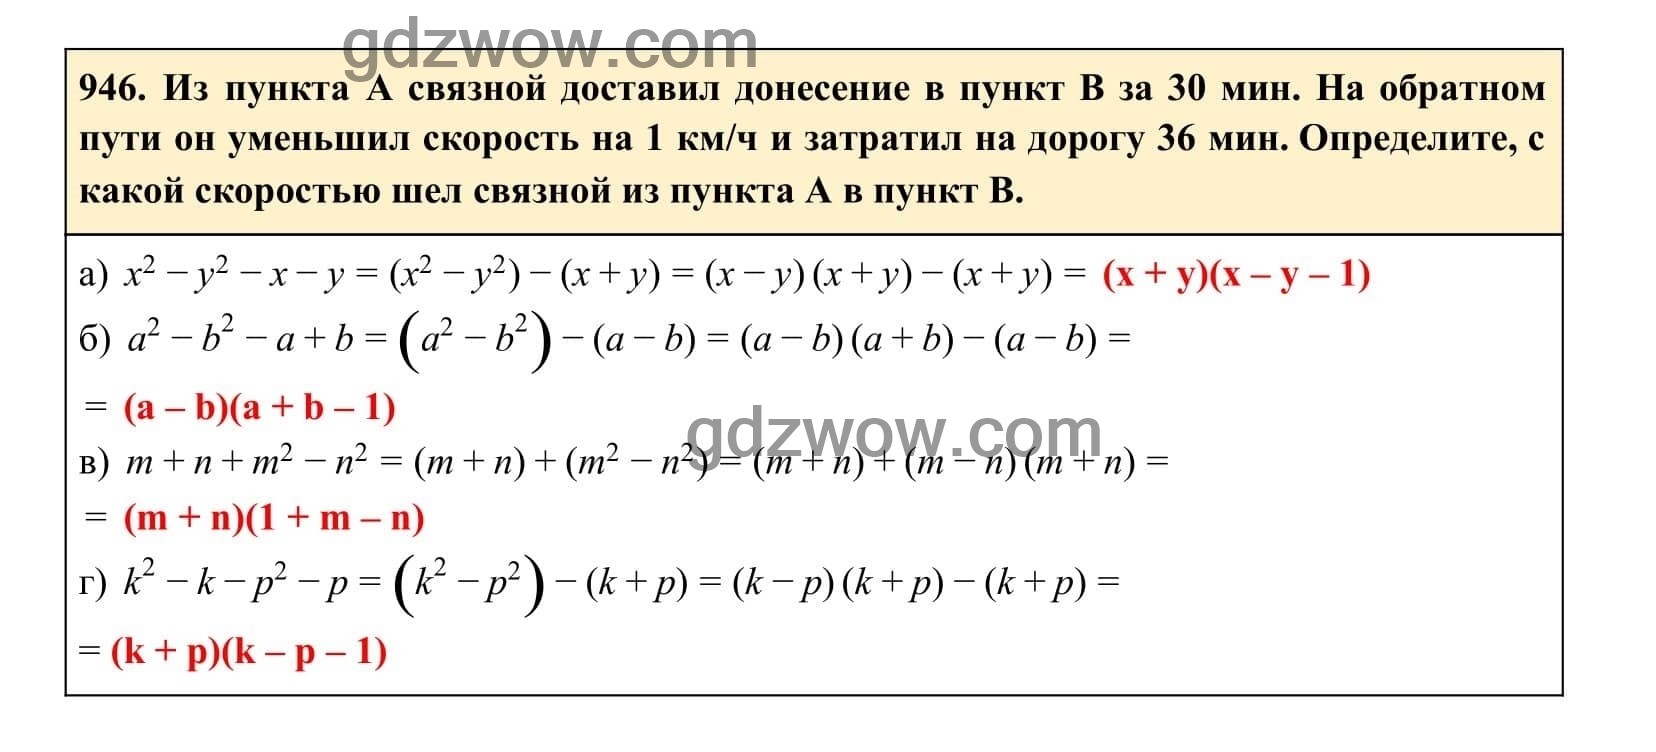 Упражнение 946 - ГДЗ по Алгебре 7 класс Учебник Макарычев (решебник) - GDZwow